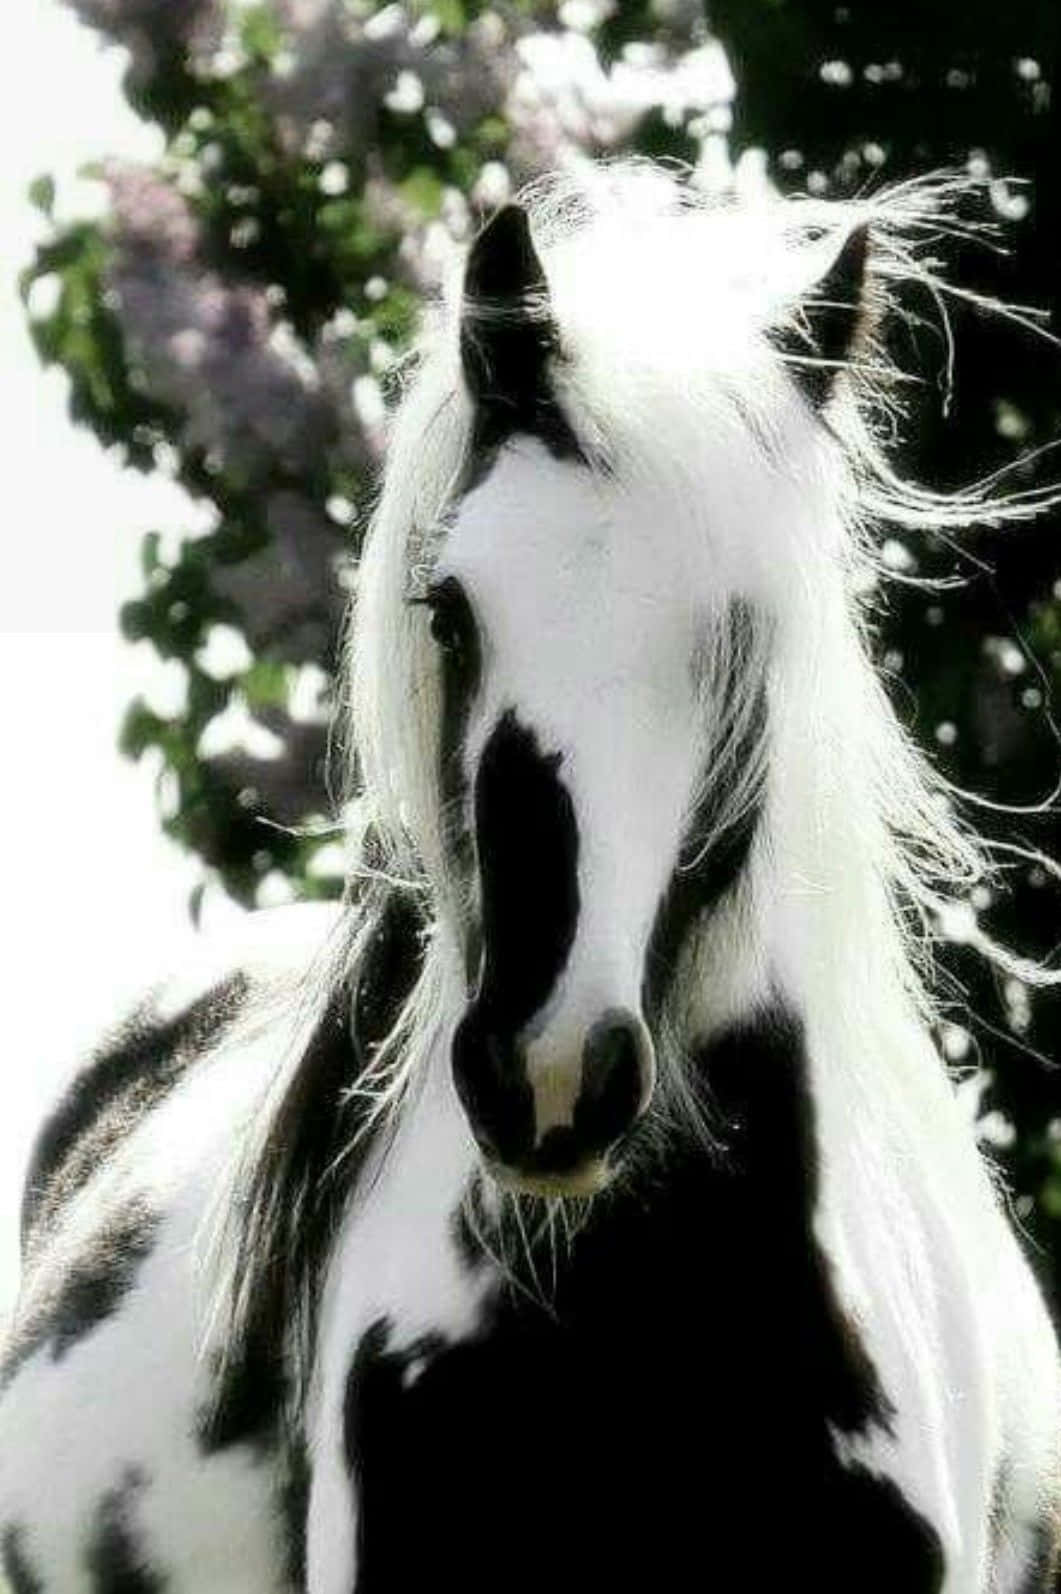 Fotodi Fotografia Animale Di Un Cavallo Galineers Cob In Bianco E Nero